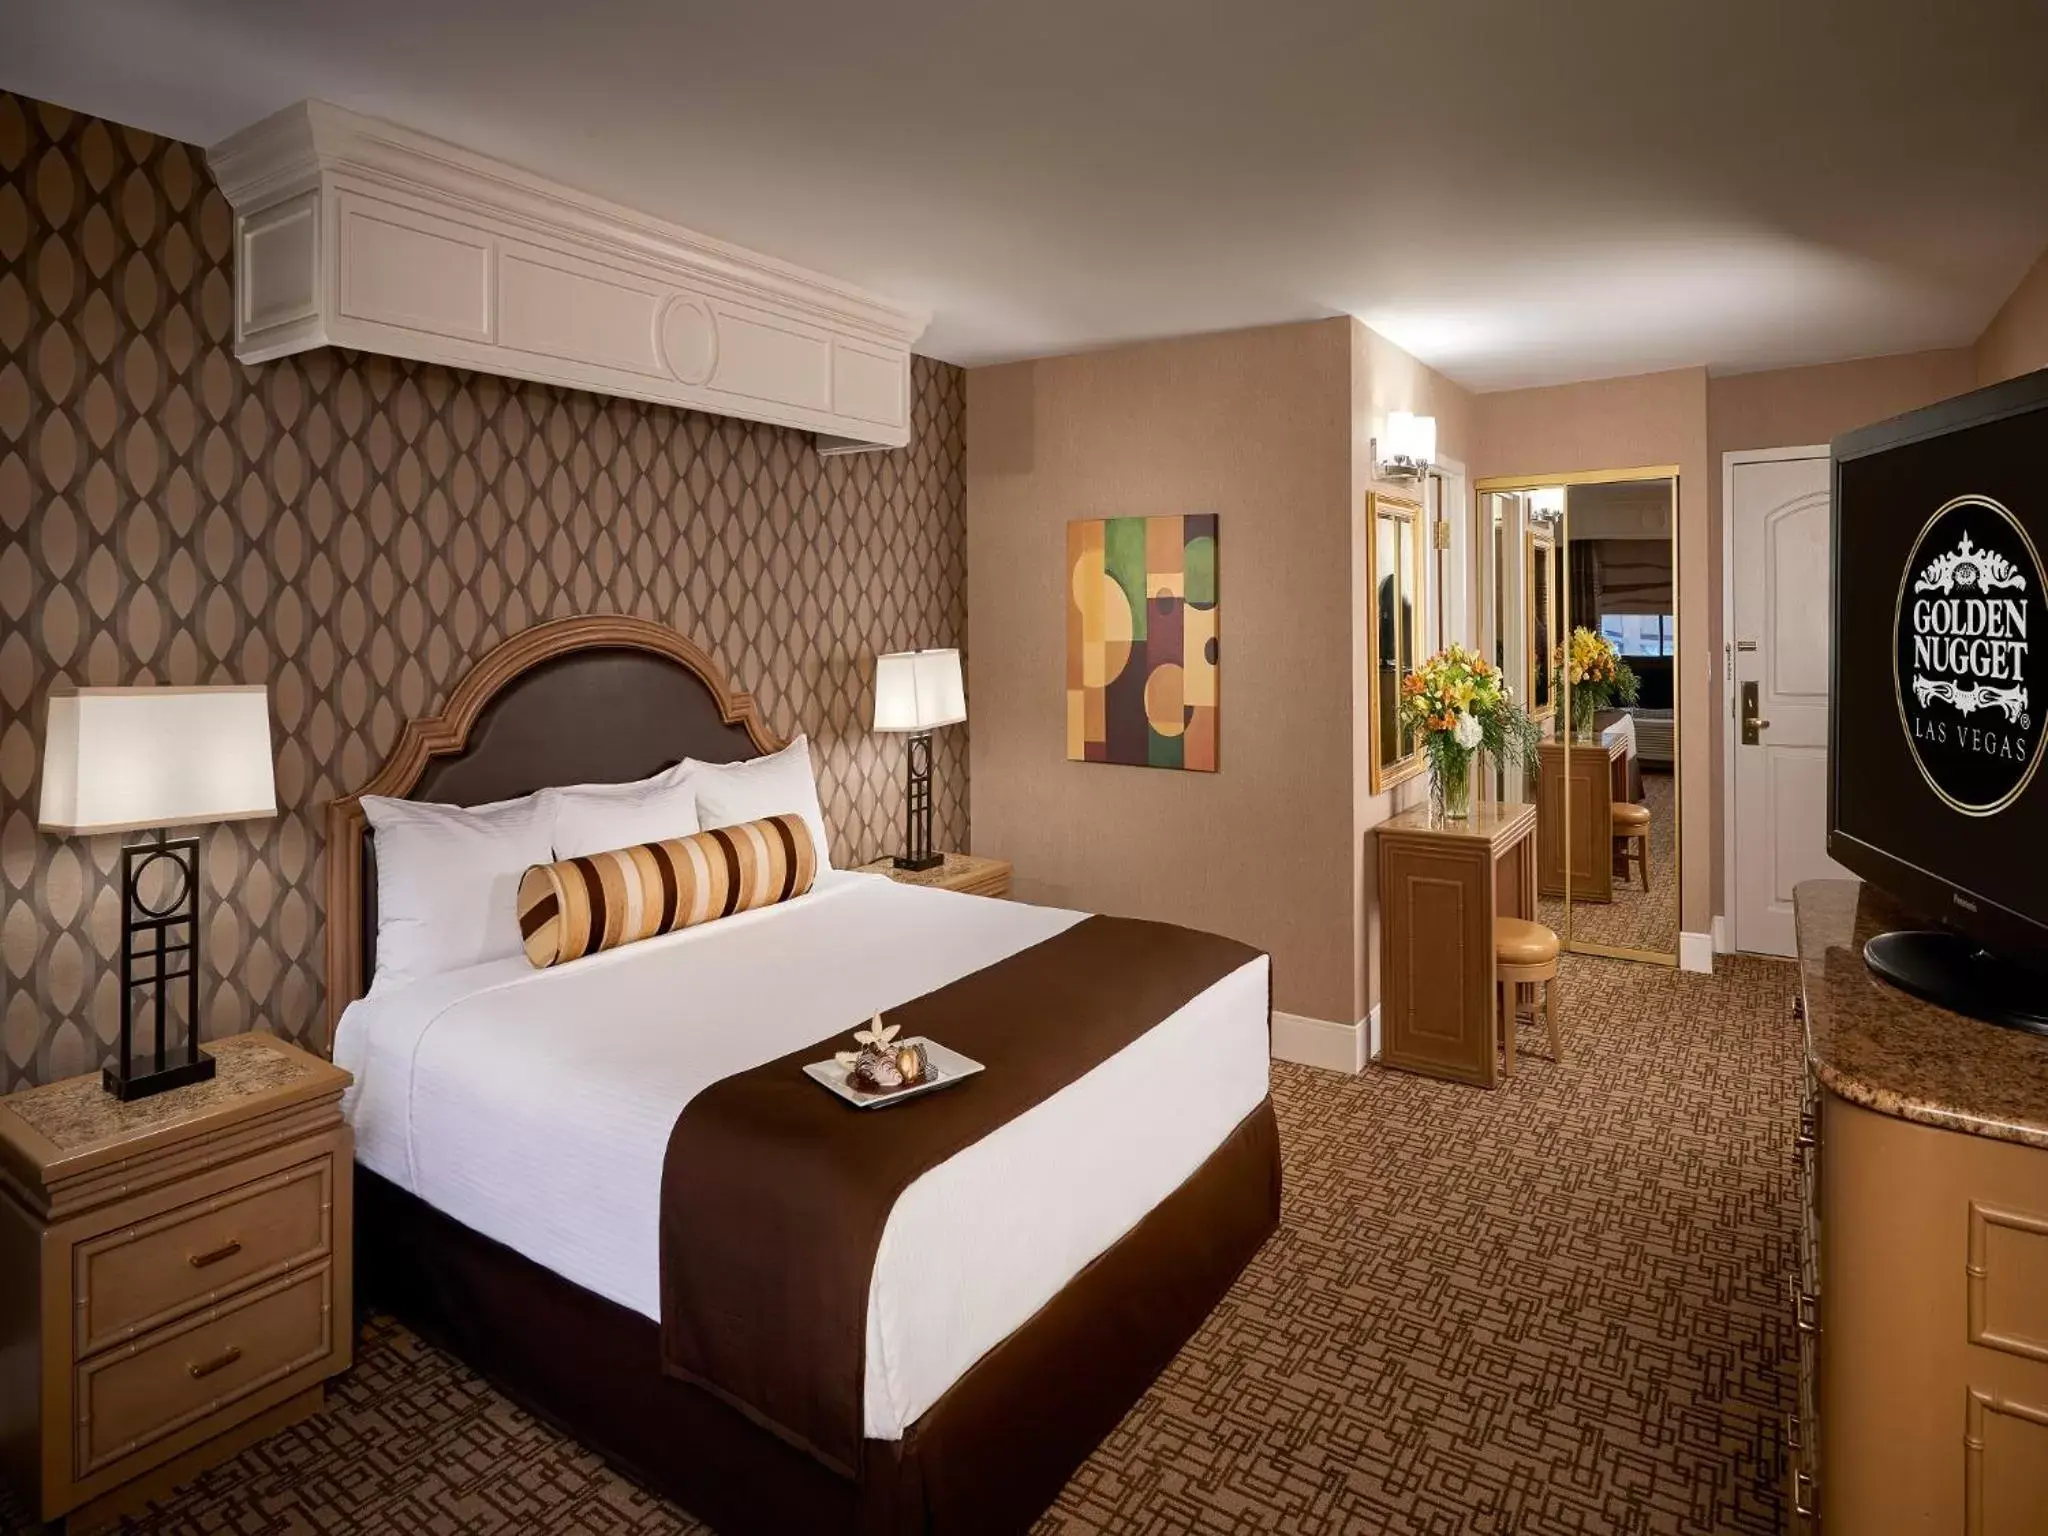 Bedroom, Room Photo in Golden Nugget Hotel & Casino Las Vegas